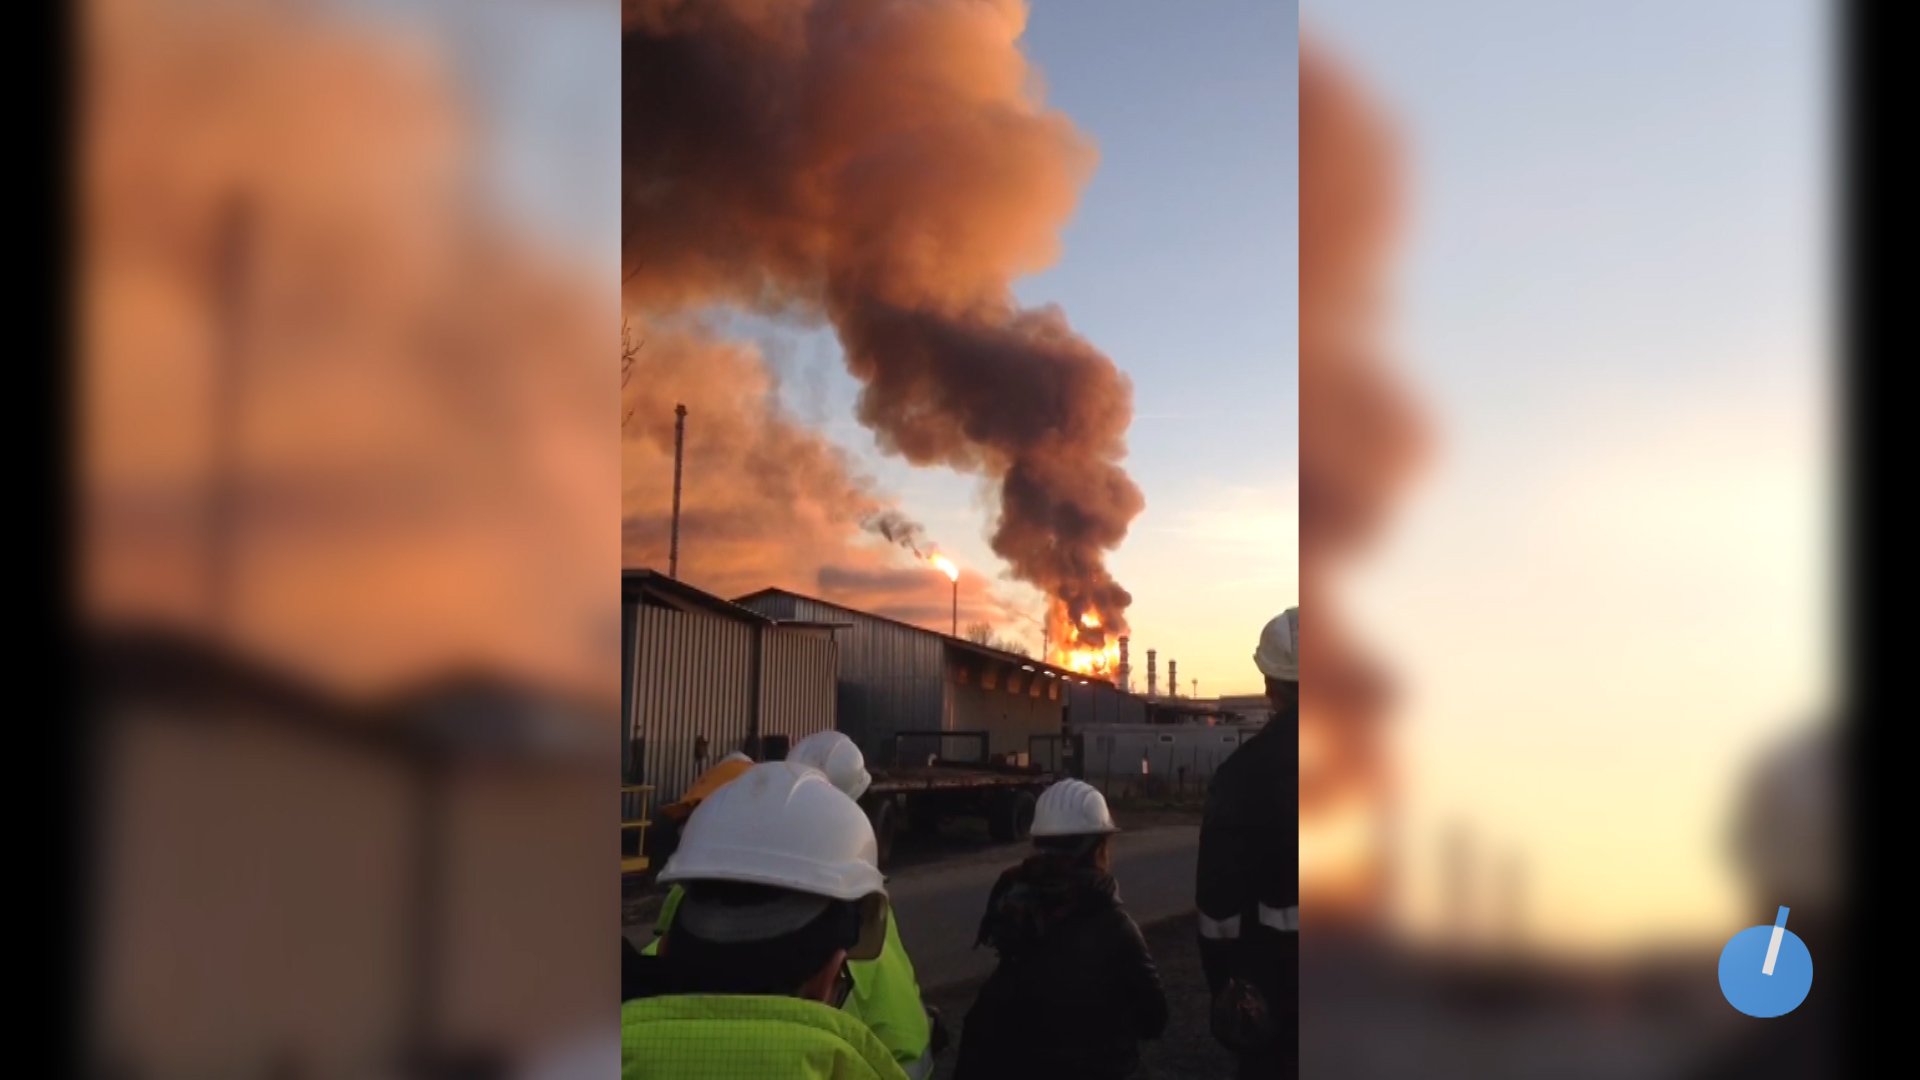 Le immagini dell’incendio alla raffineria da sotto lo stabilimento